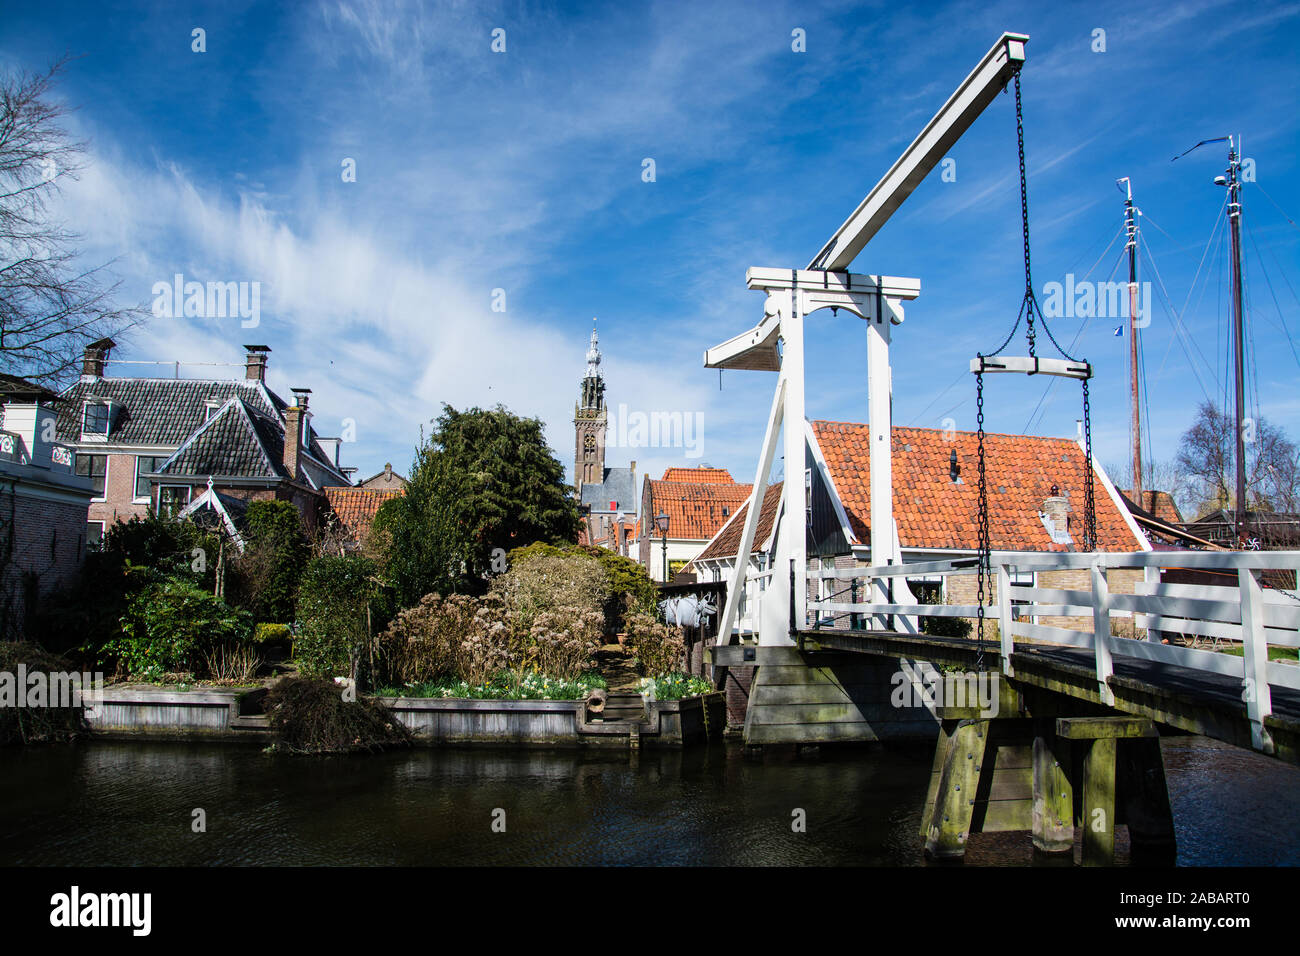 Edam ist eine Kleinstadt in der Región Nordholland, Niederlande. Foto de stock